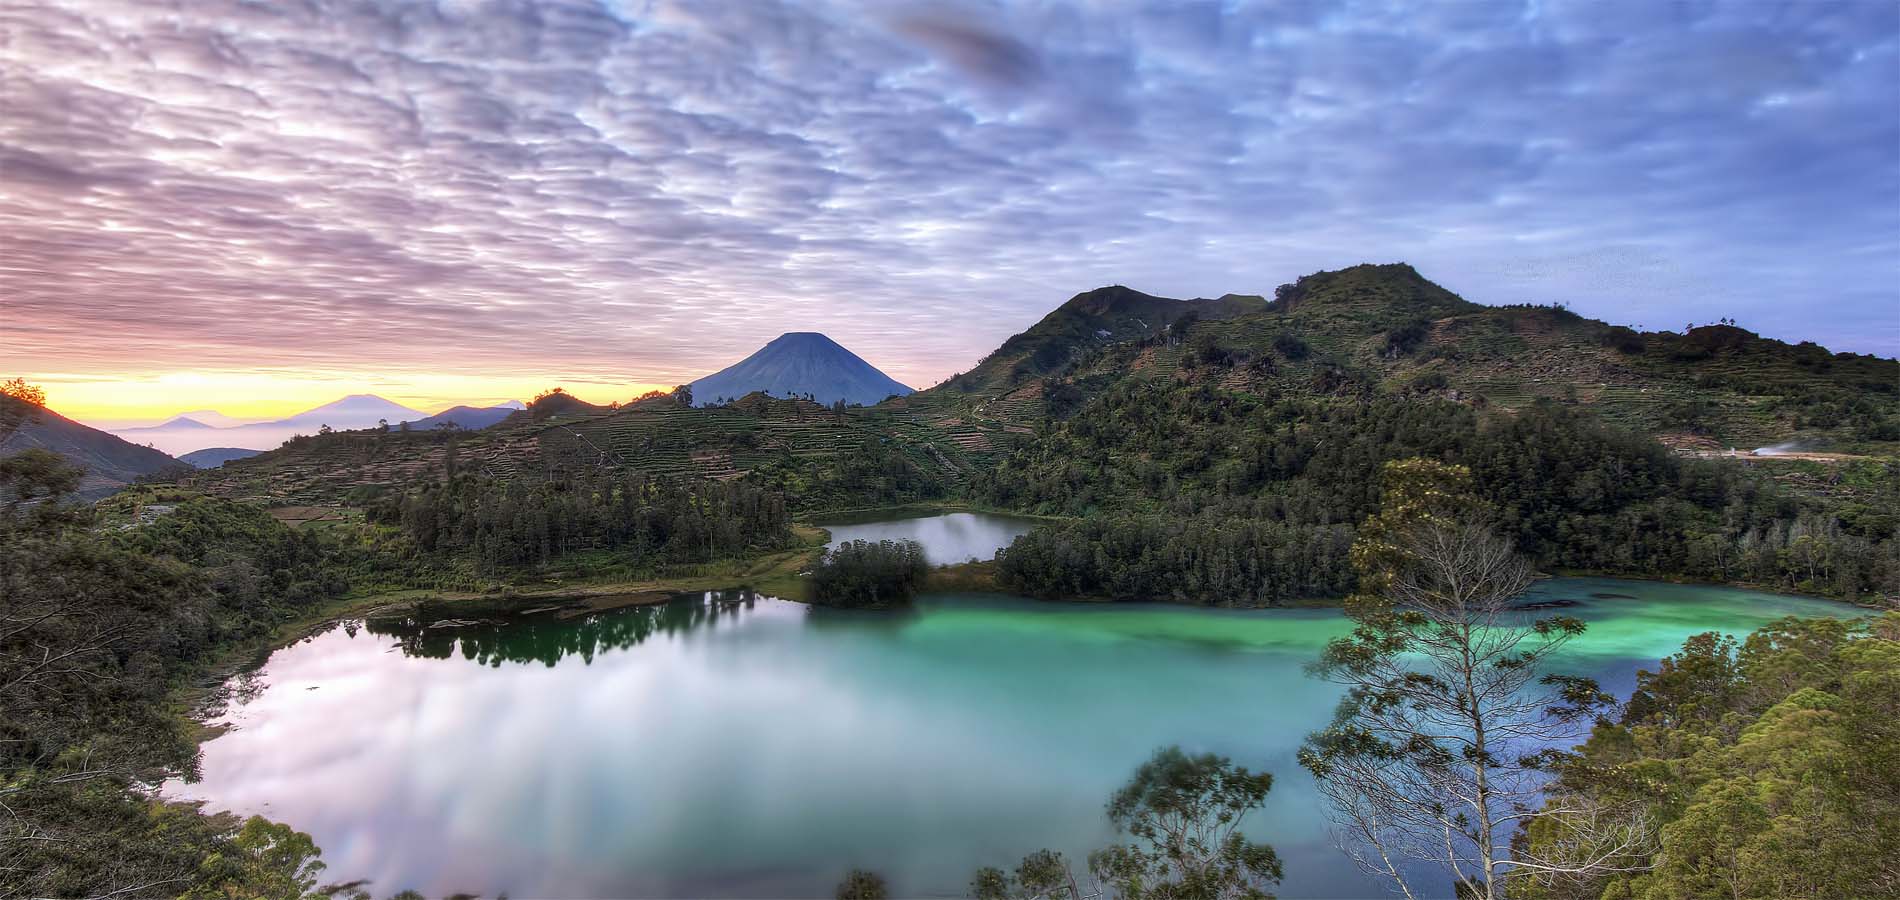 Home 1900x900 Istock Indonesie Java Diengplateau Tealag warna kratermeer vulkaan mooi